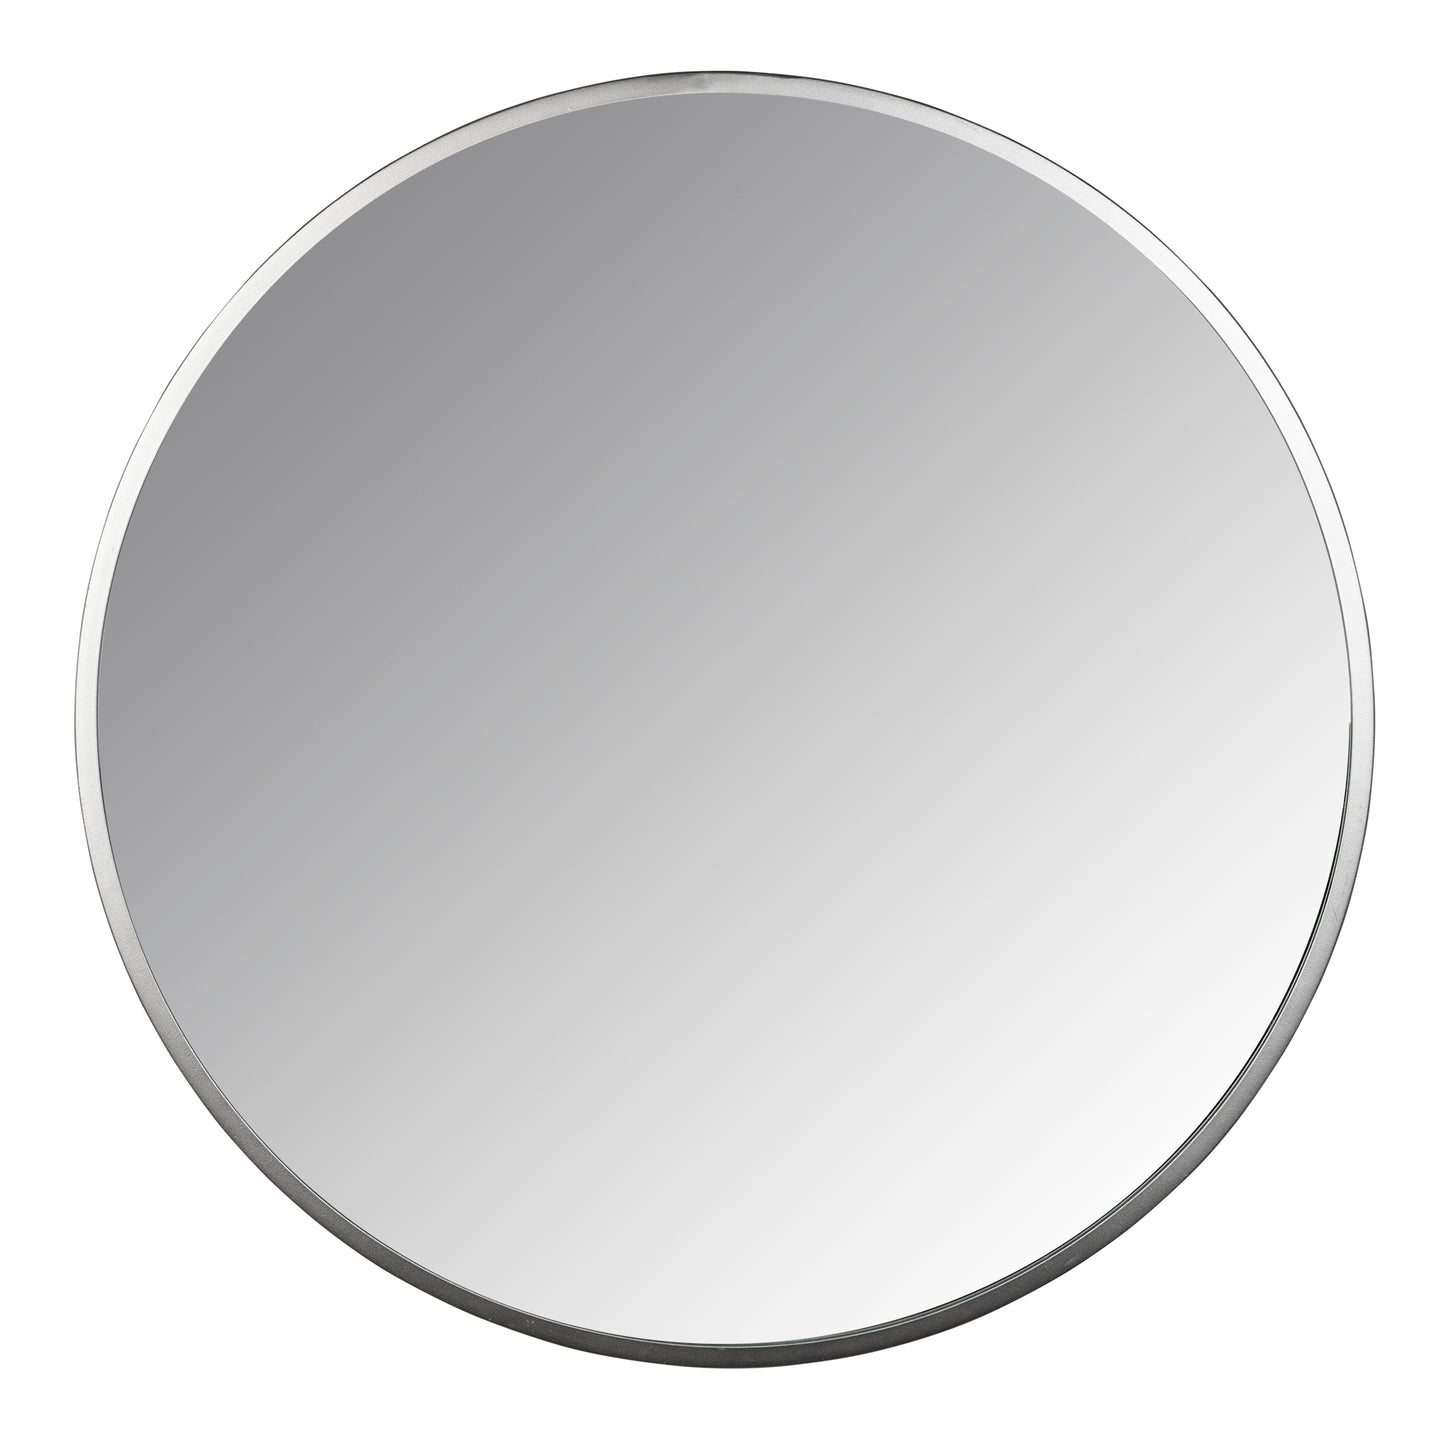 Minimalist Silver Round Wall Mirror